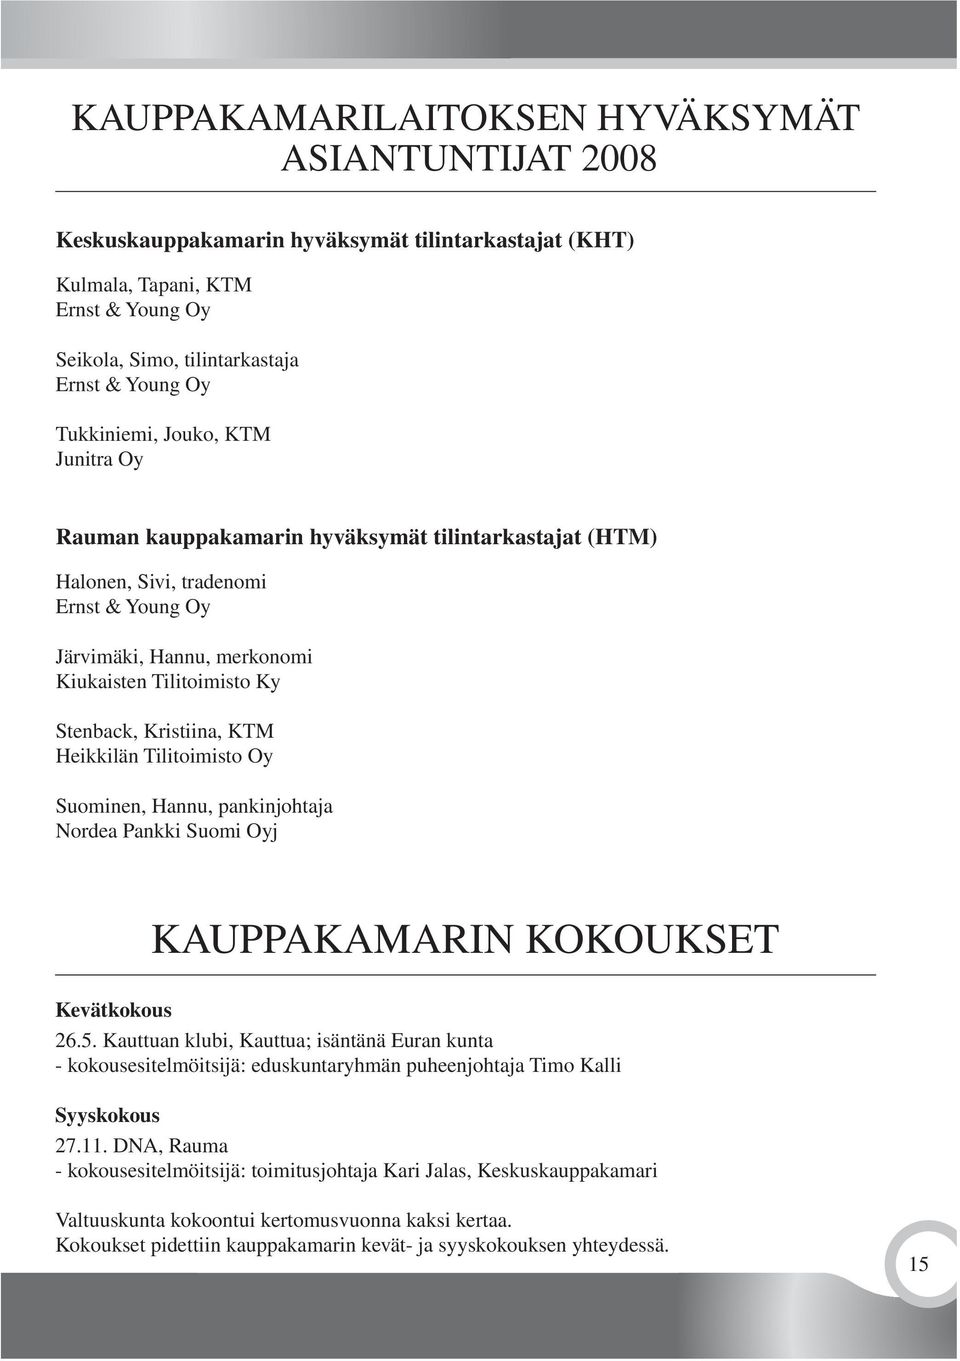 Kristiina, KTM Heikkilän Tilitoimisto Oy Suominen, Hannu, pankinjohtaja Nordea Pankki Suomi Oyj KAUPPAKAMARIN KOKOUKSET Kevätkokous 26.5.